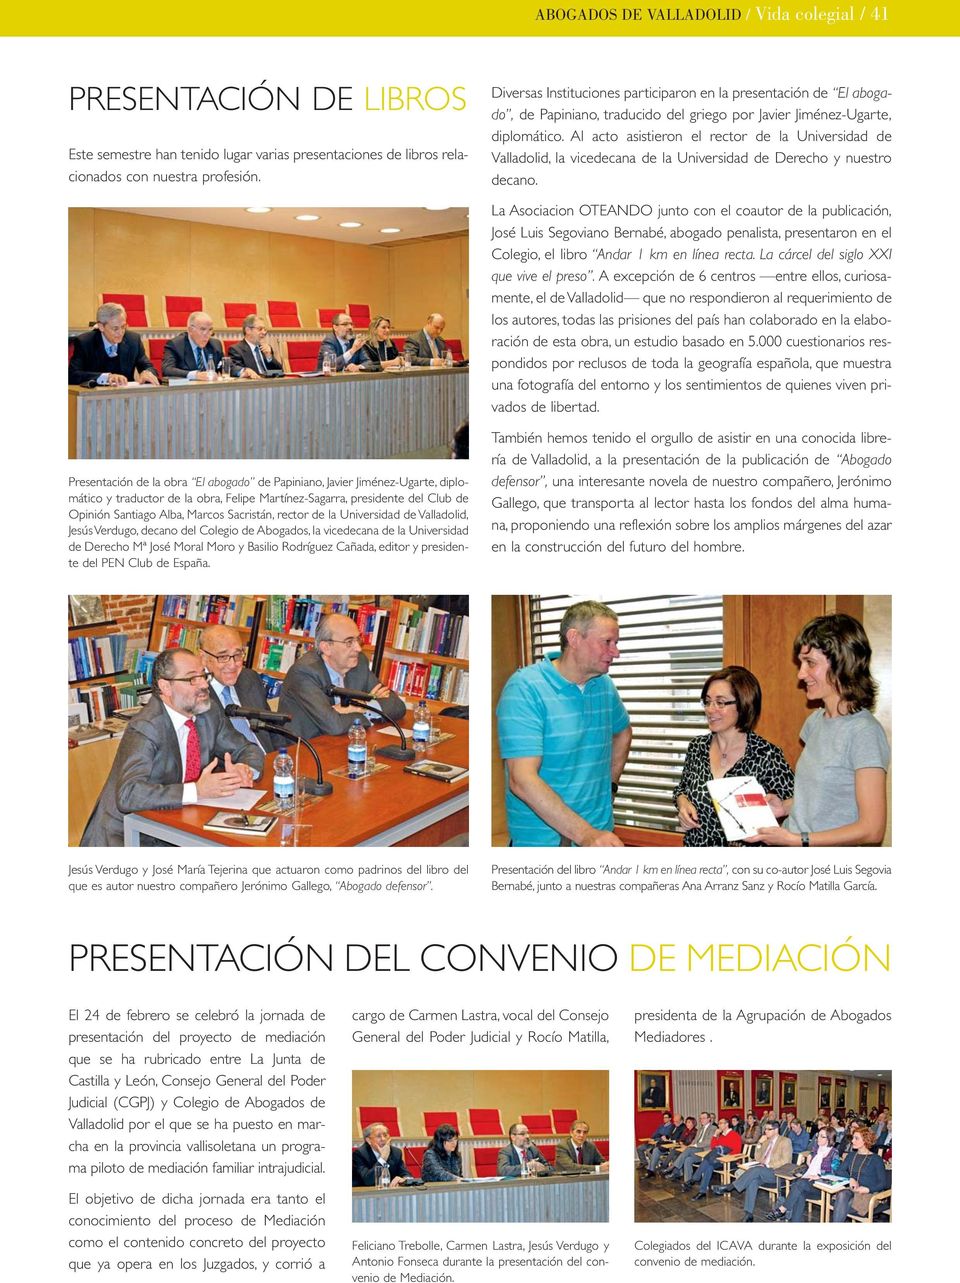 Al acto asistieron el rector de la Universidad de Valladolid, la vicedecana de la Universidad de Derecho y nuestro decano.